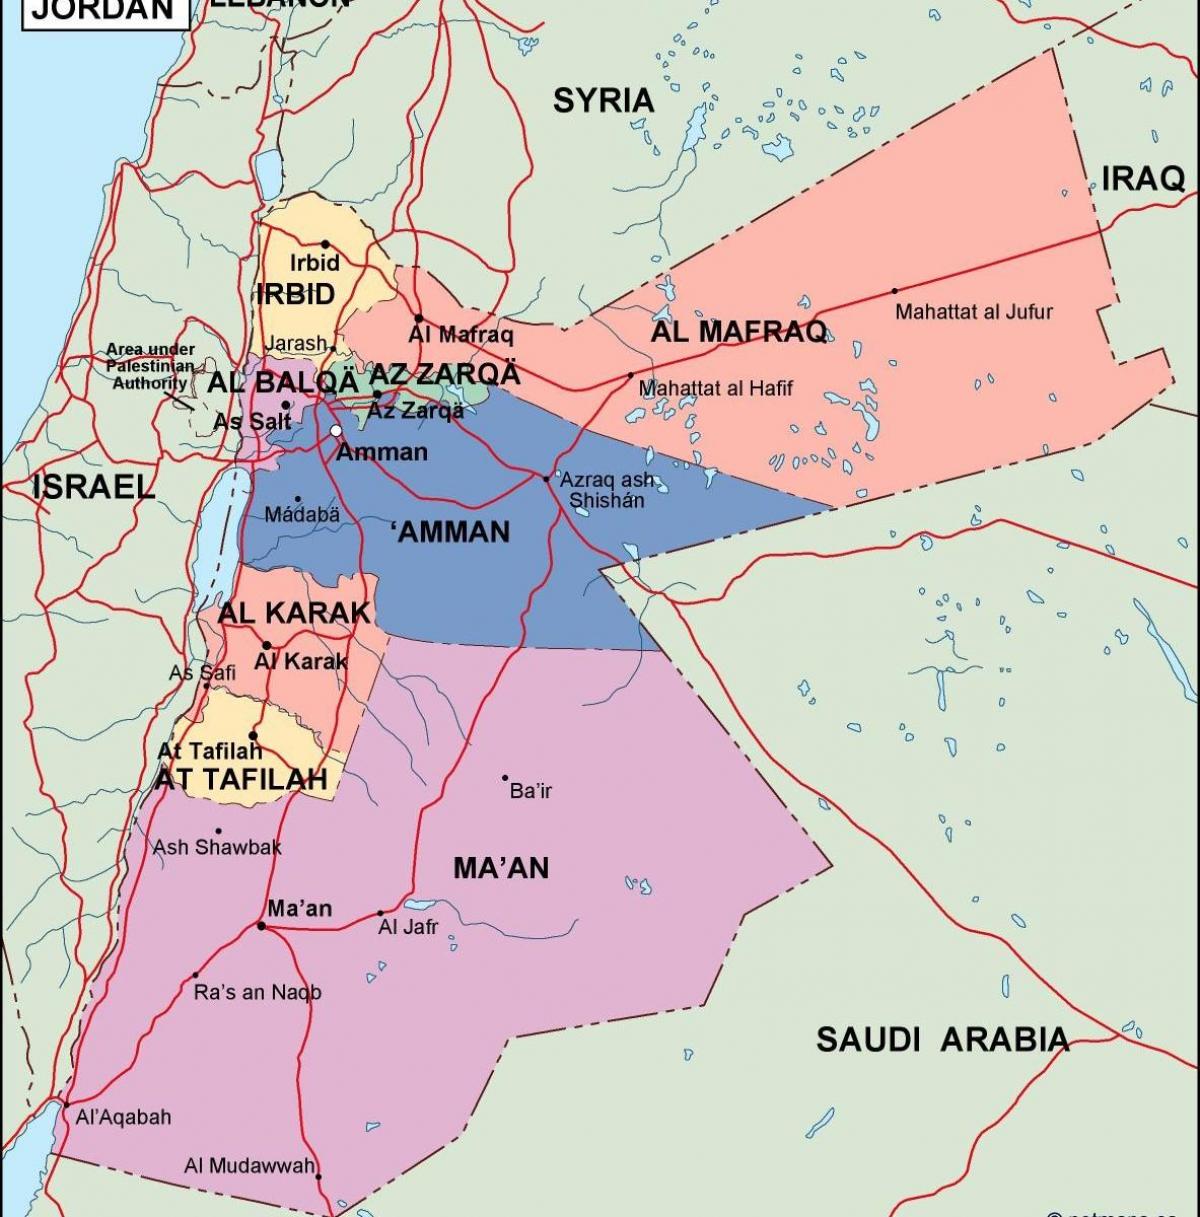 kort over Jordan politiske